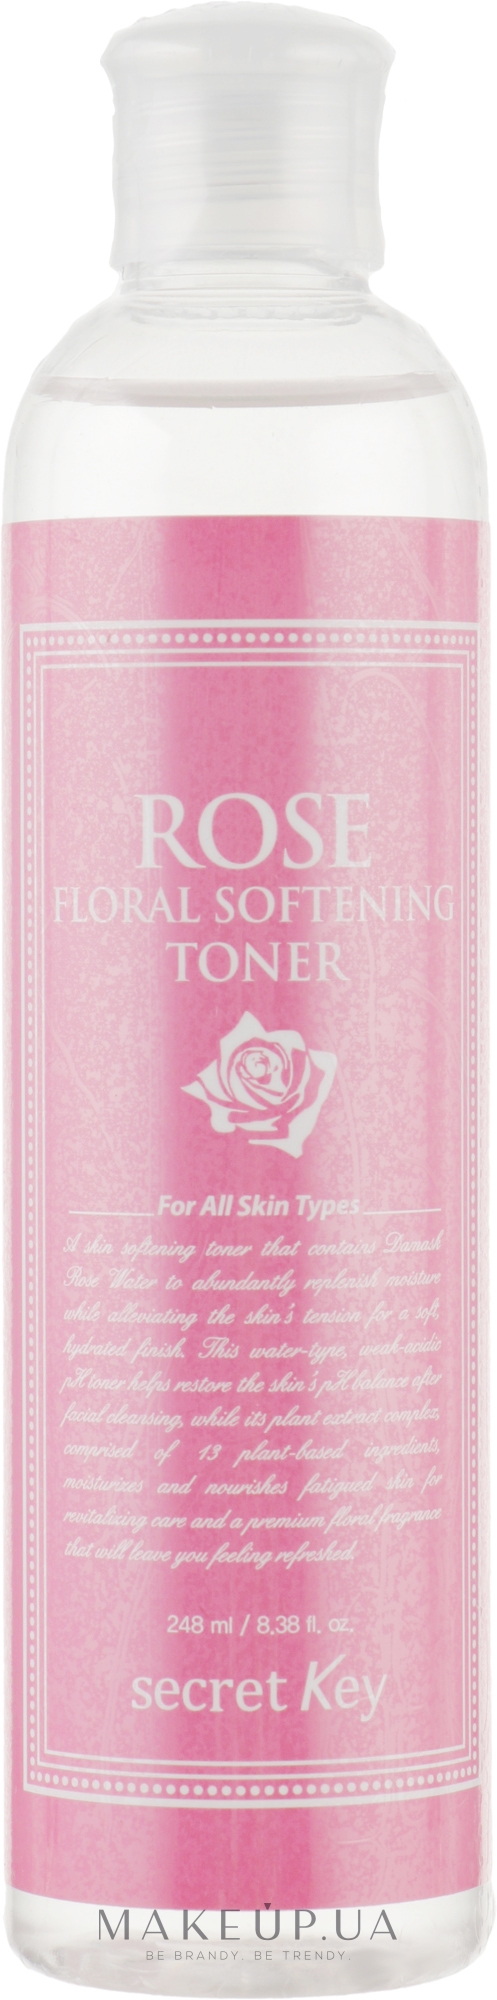 Тонізуючий тонер для обличчя - Secret Key Rose Floral Softening Toner — фото 248ml